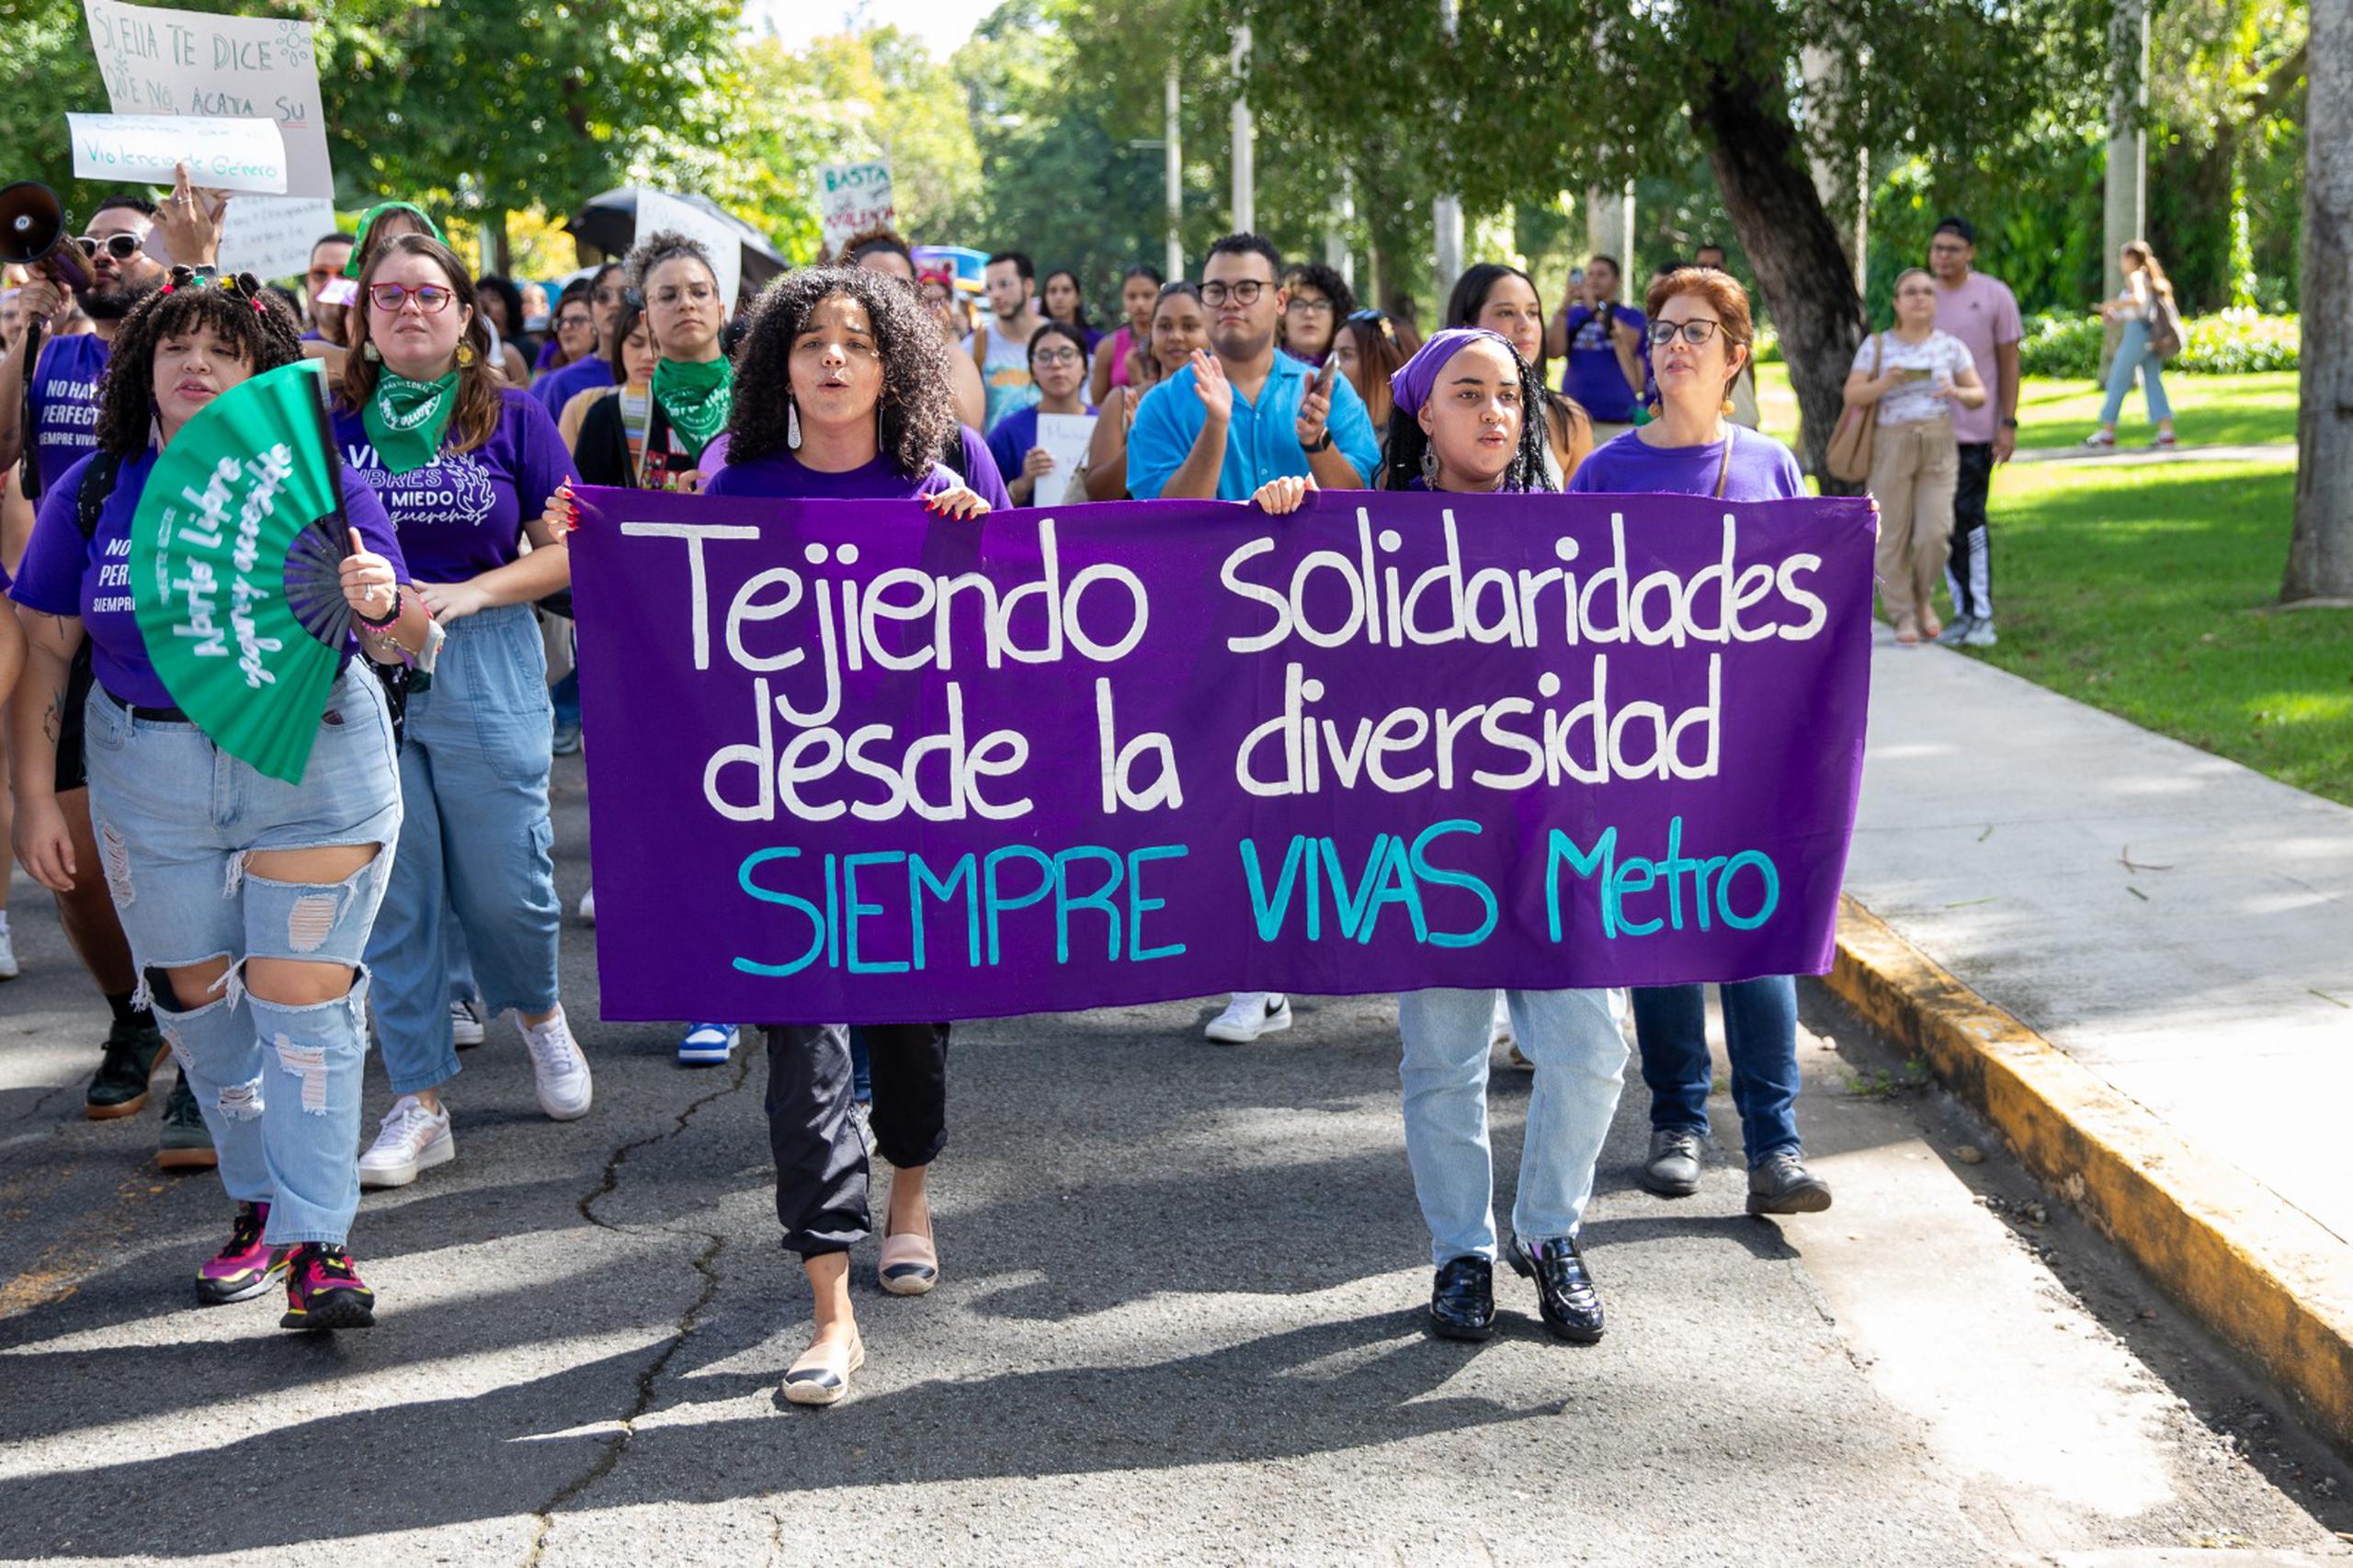 Siempre Vivas Metro es un "proyecto universitario feminista en apoyo a la erradicación de la violencia de género".